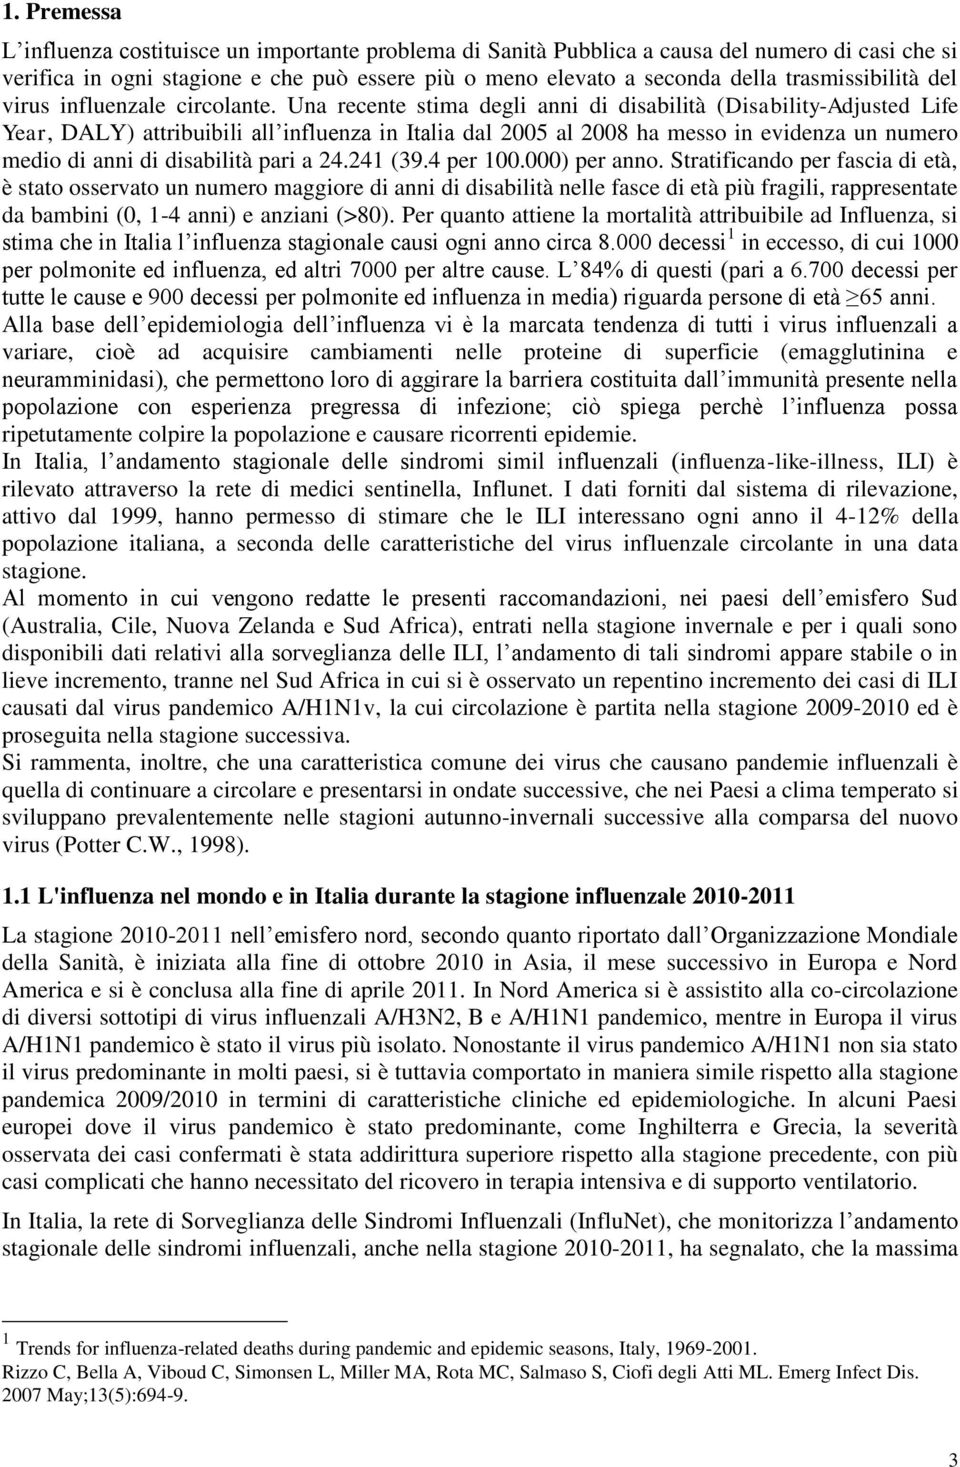 Una recente stima degli anni di disabilità (Disability-Adjusted Life Year, DALY) attribuibili all influenza in Italia dal 2005 al 2008 ha messo in evidenza un numero medio di anni di disabilità pari